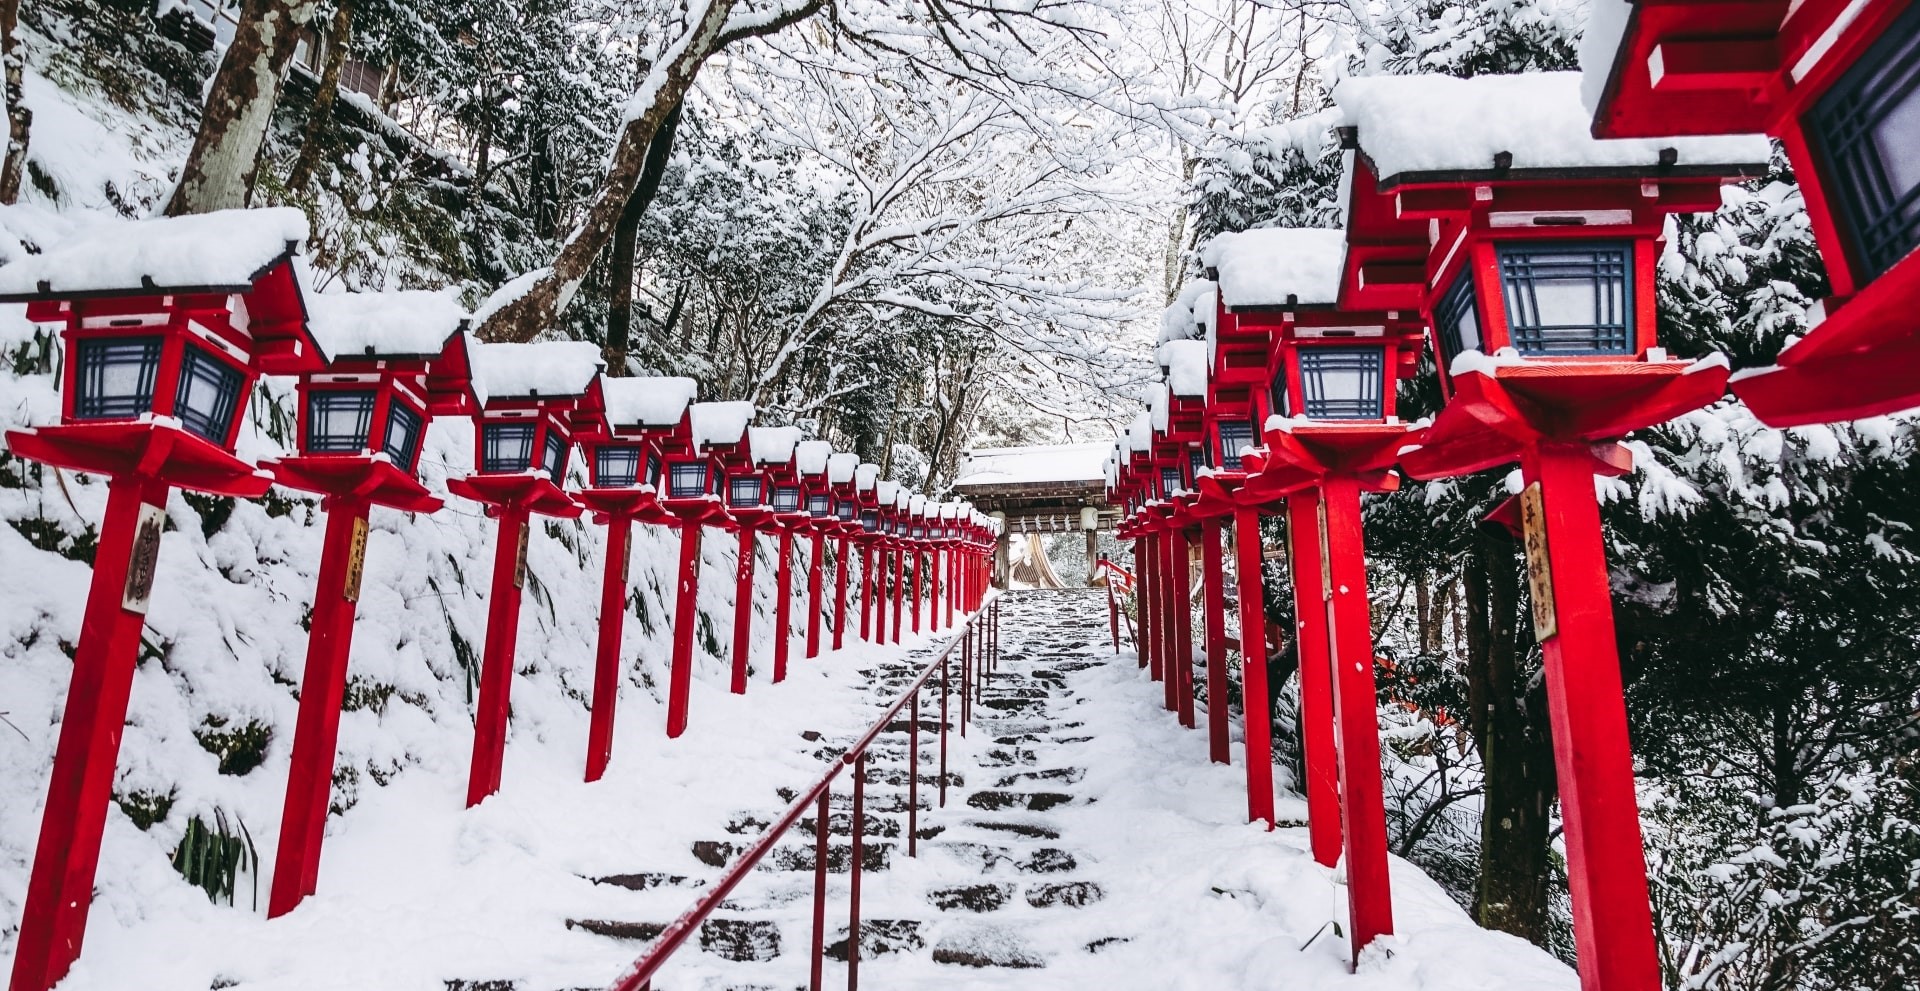 The approach of Kifune Shrine in winter